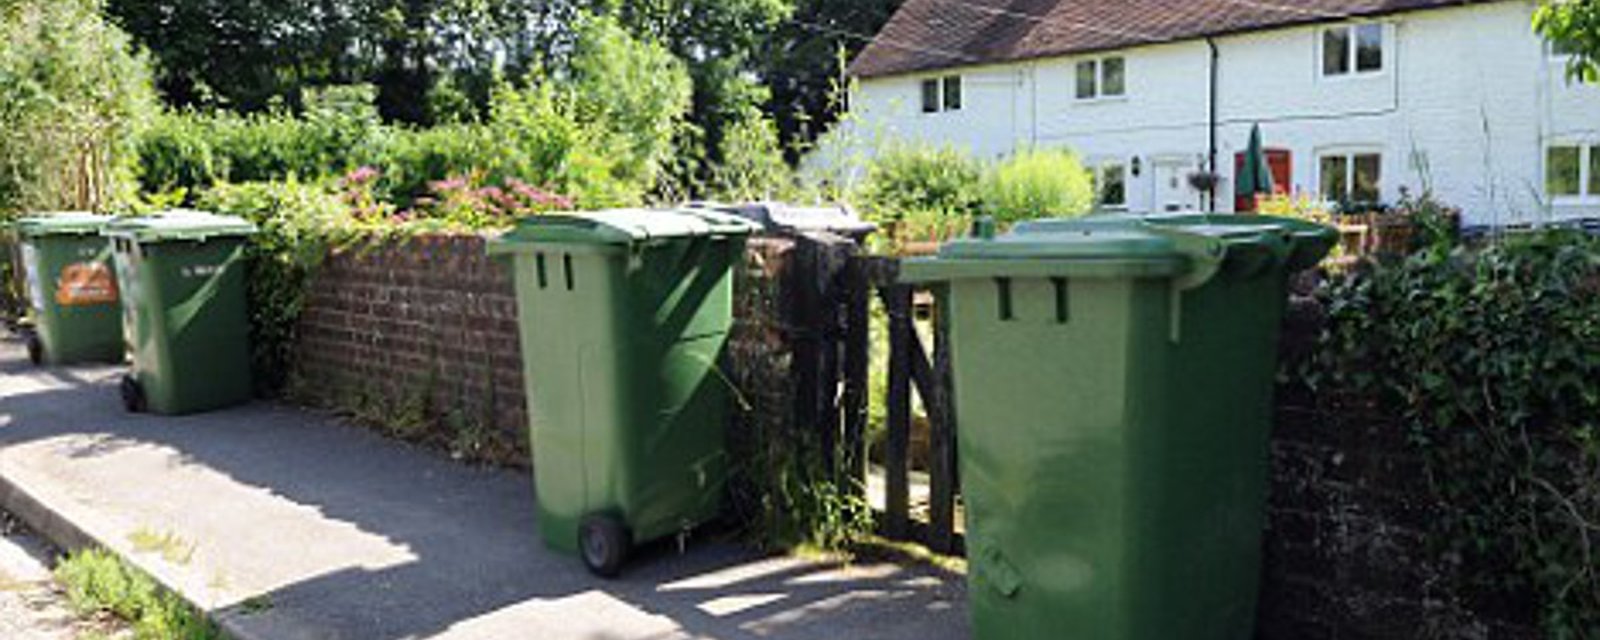 Personne n'aime voir les ordures déguiser le beau décor de son jardin! Voici 5 bonnes idées, pour les camoufler! 